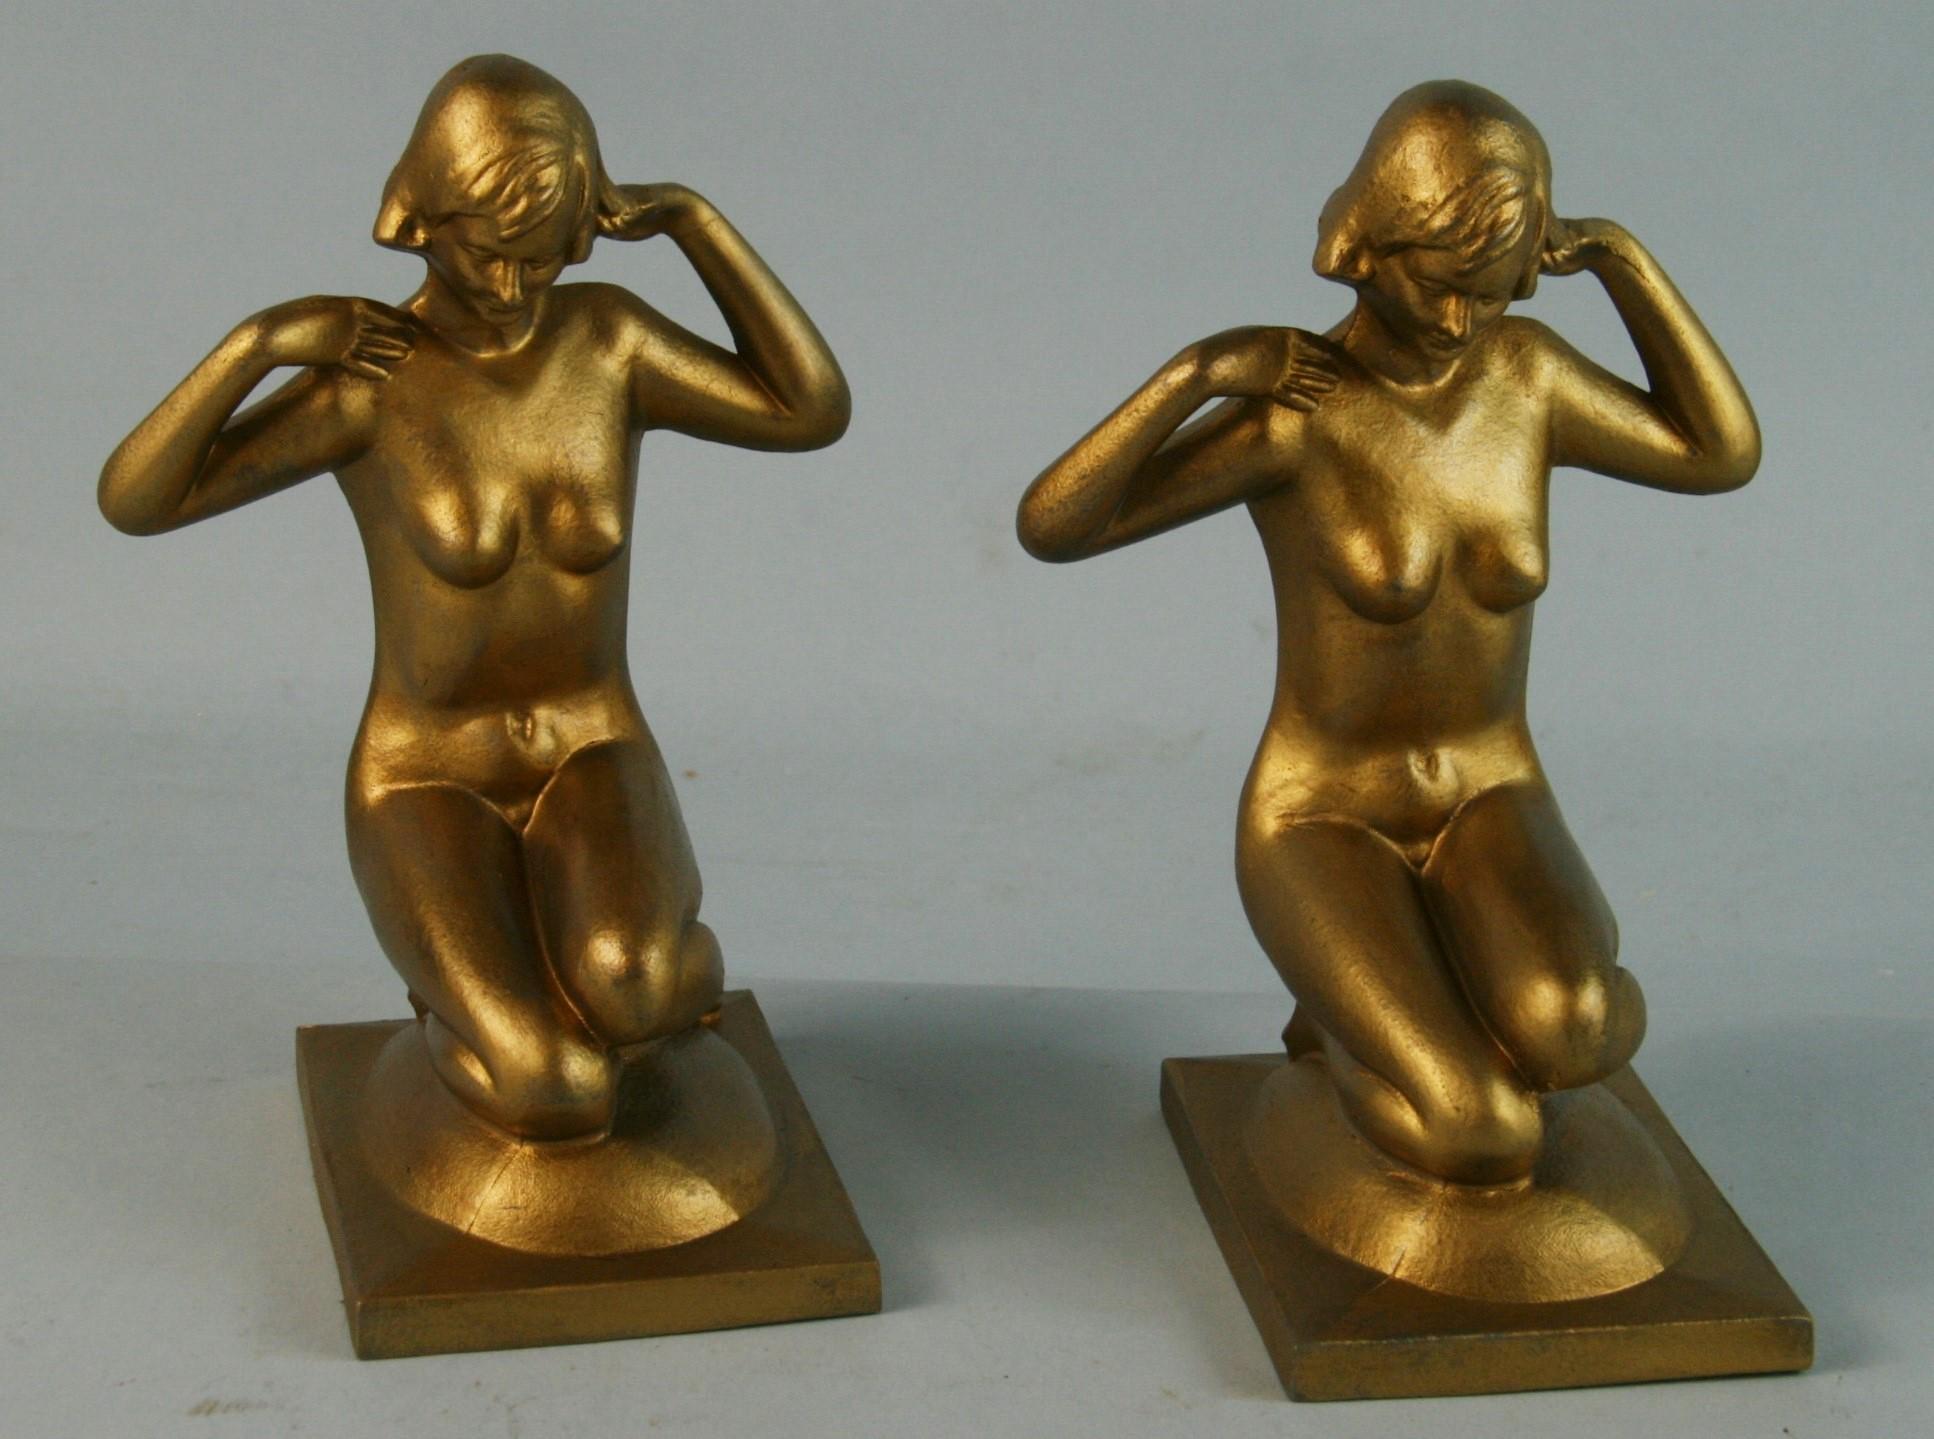 3-669 Bronzart cast metal gilt finished nude female figure bookends.